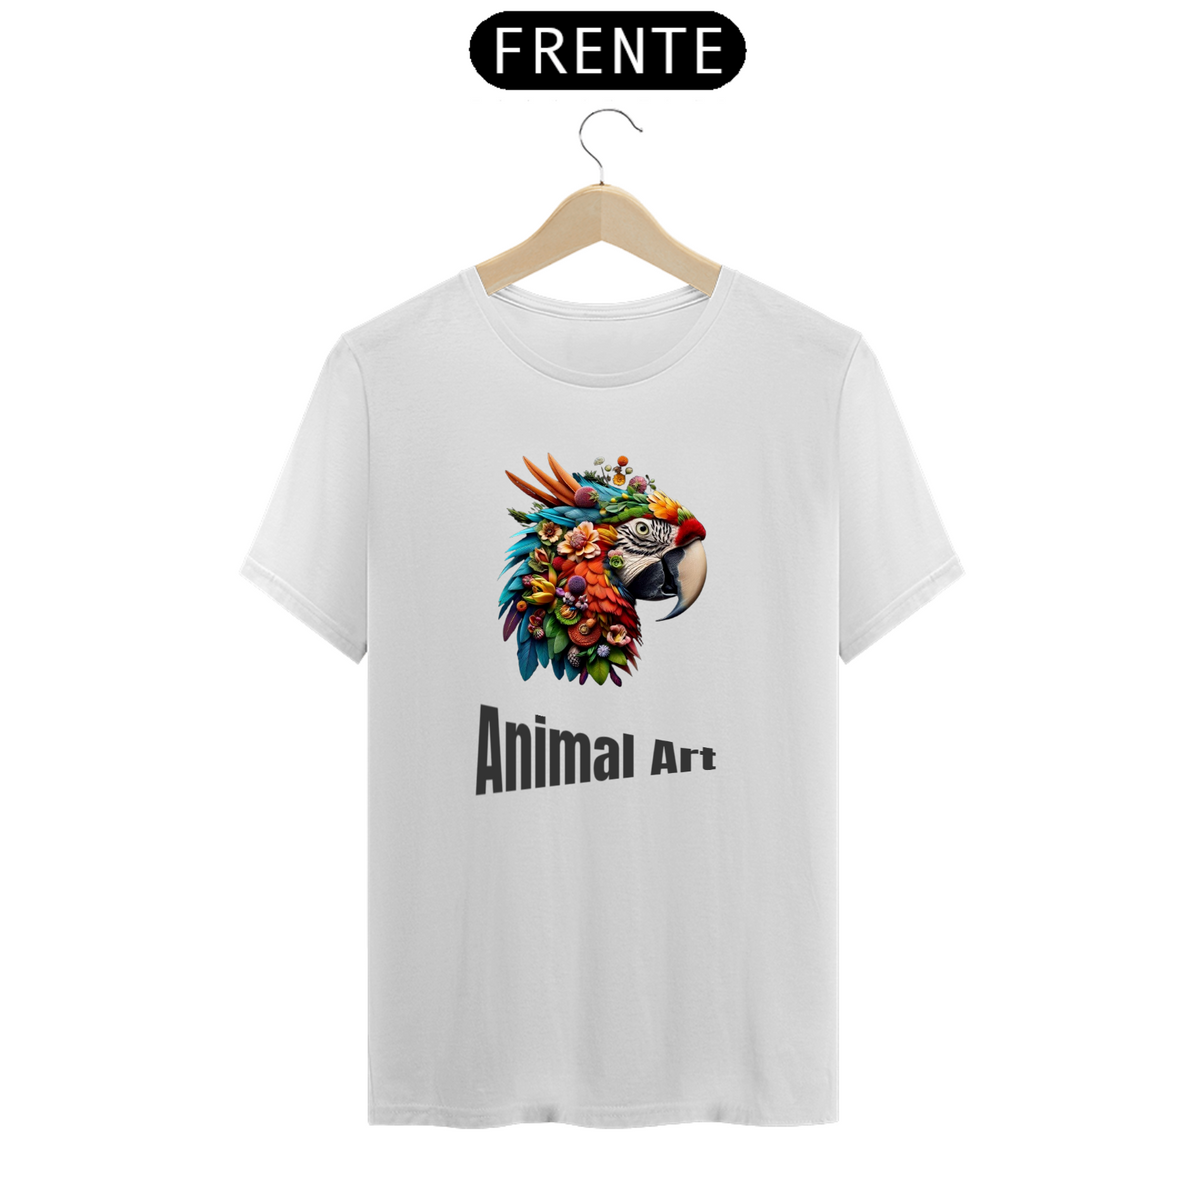 Nome do produto: Série Animal Art